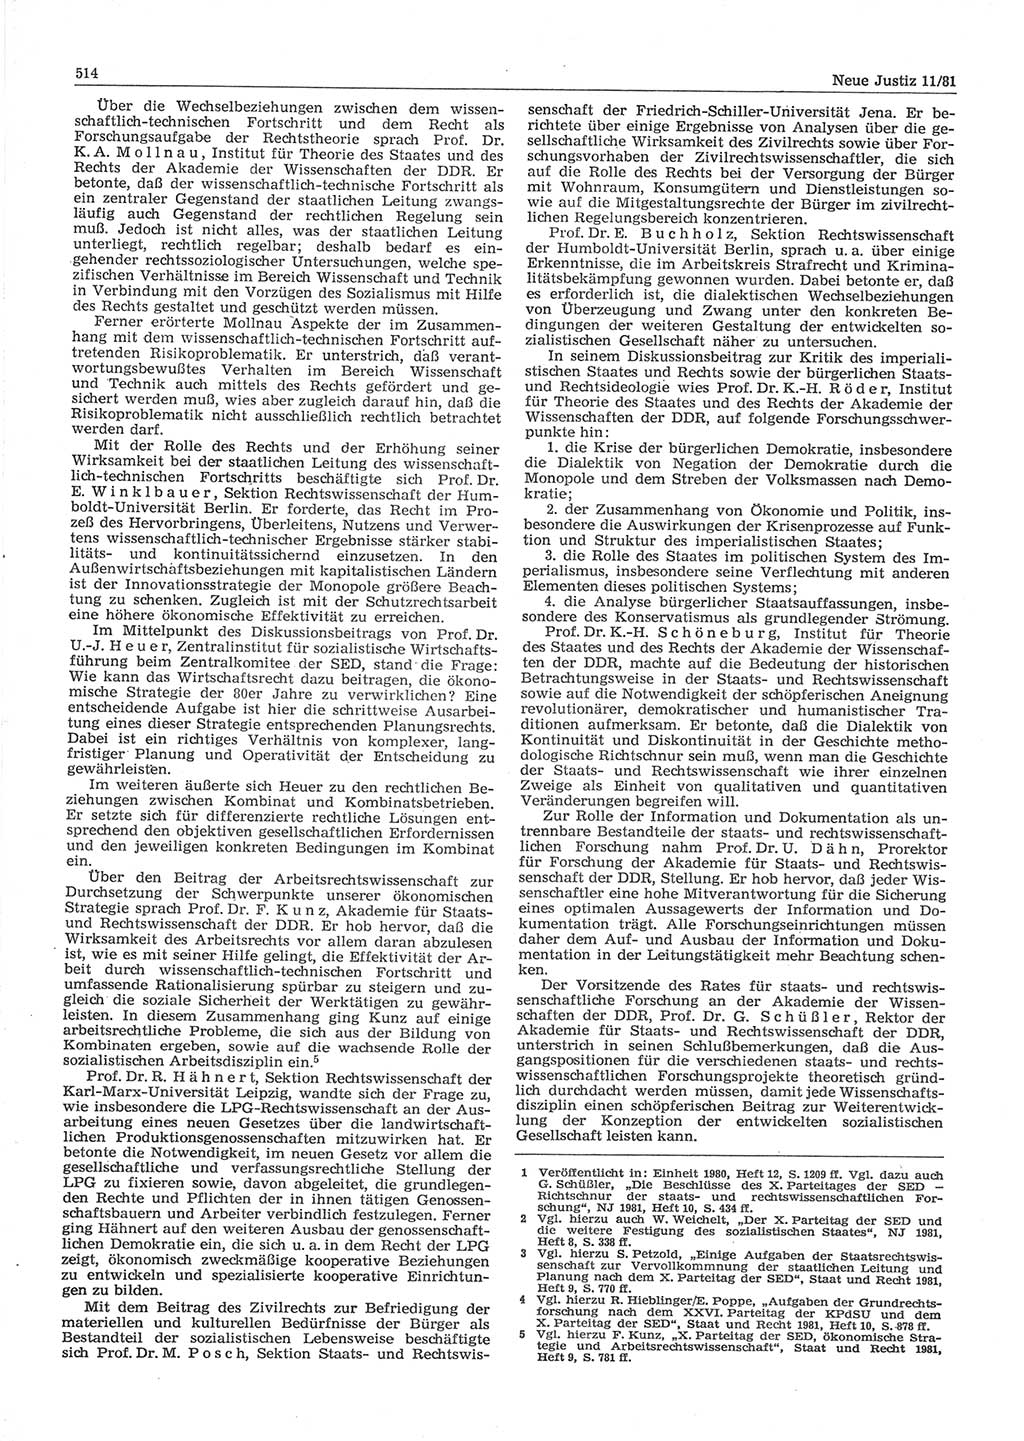 Neue Justiz (NJ), Zeitschrift für sozialistisches Recht und Gesetzlichkeit [Deutsche Demokratische Republik (DDR)], 35. Jahrgang 1981, Seite 514 (NJ DDR 1981, S. 514)